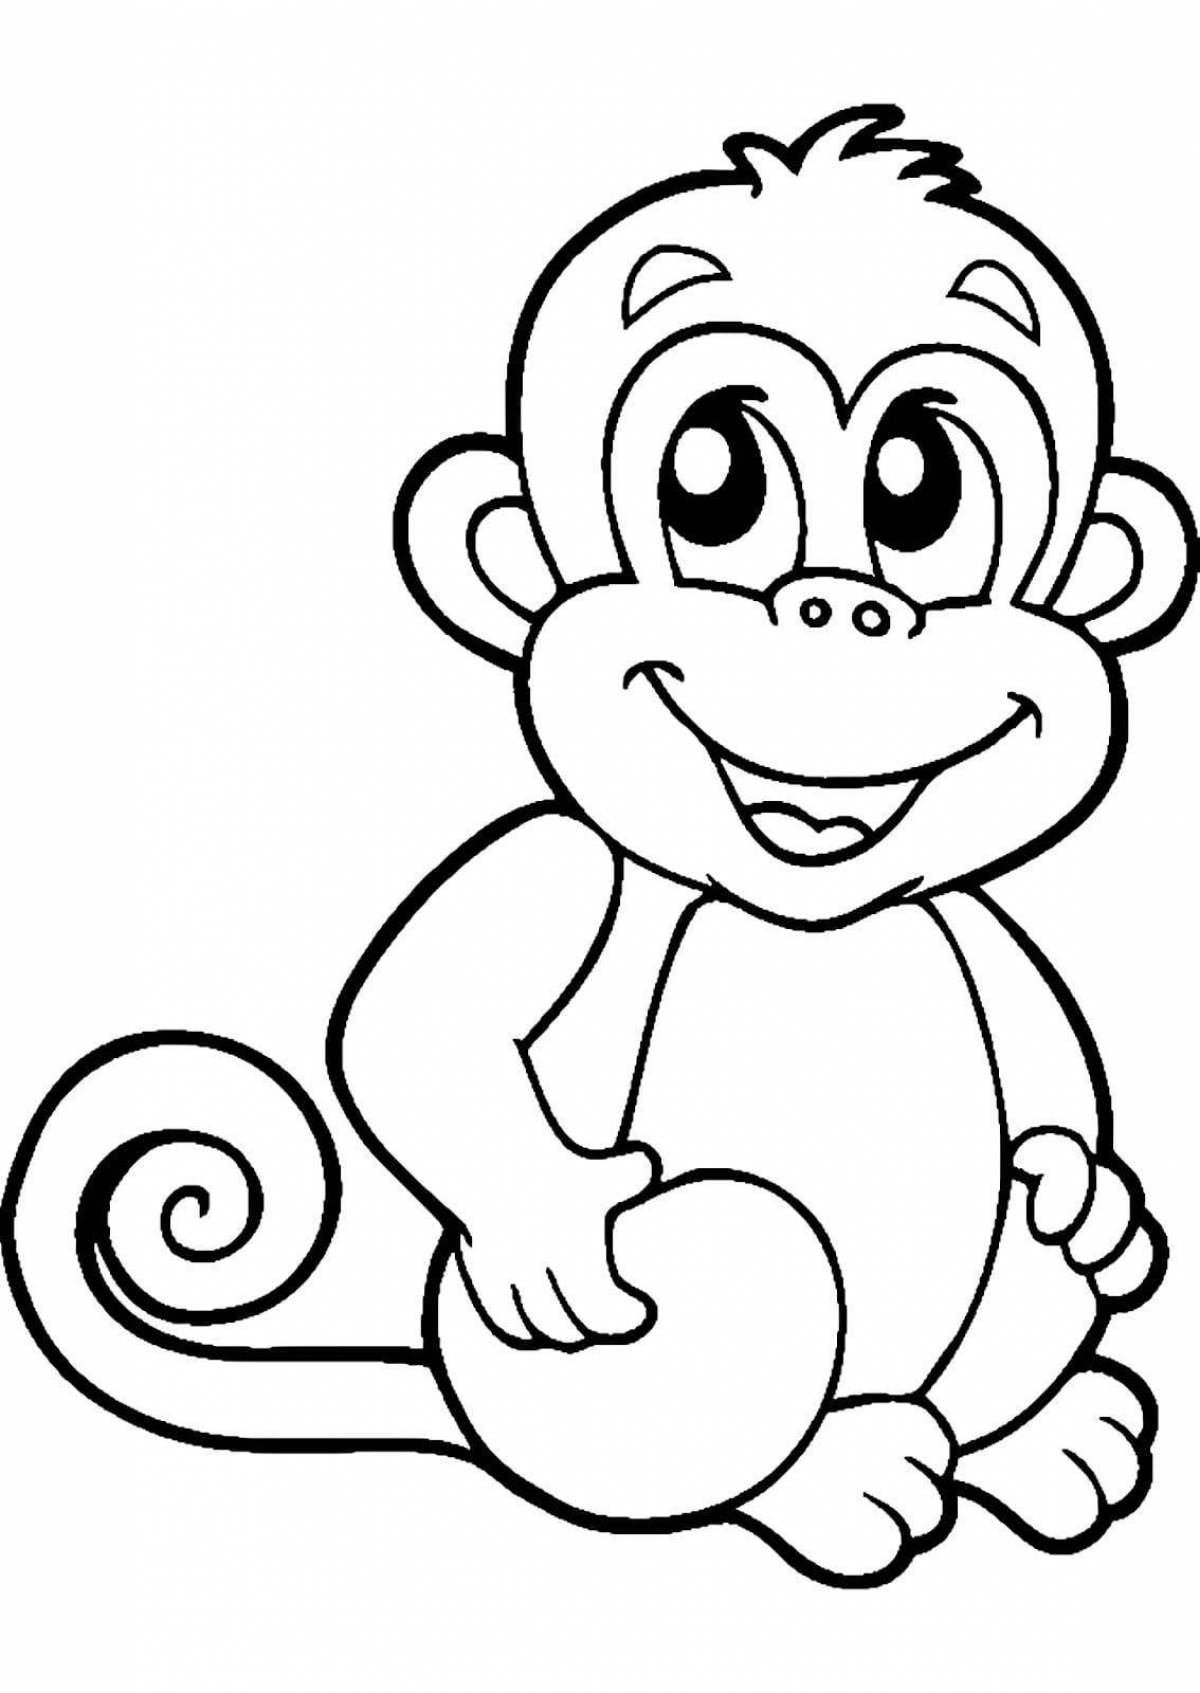 Милая раскраска обезьянка для детей